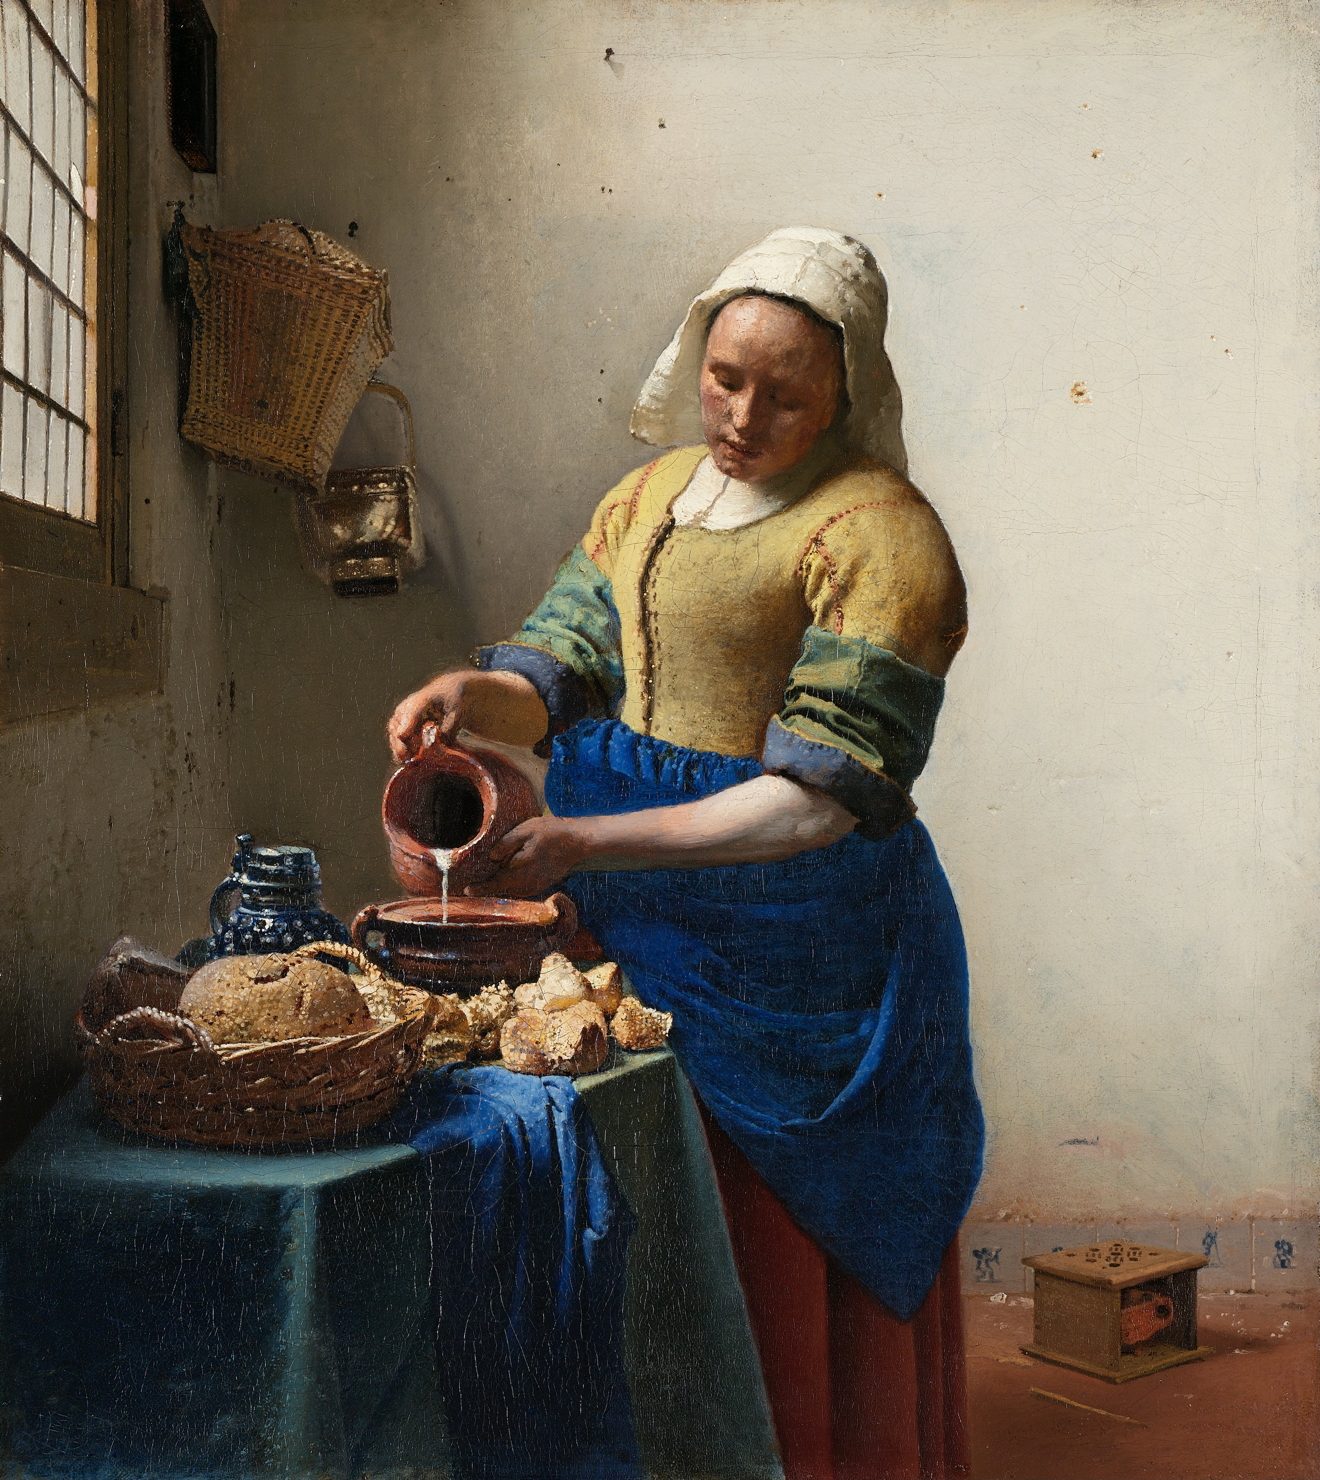 La laitière by Johannes Vermeer - 1658-1661 